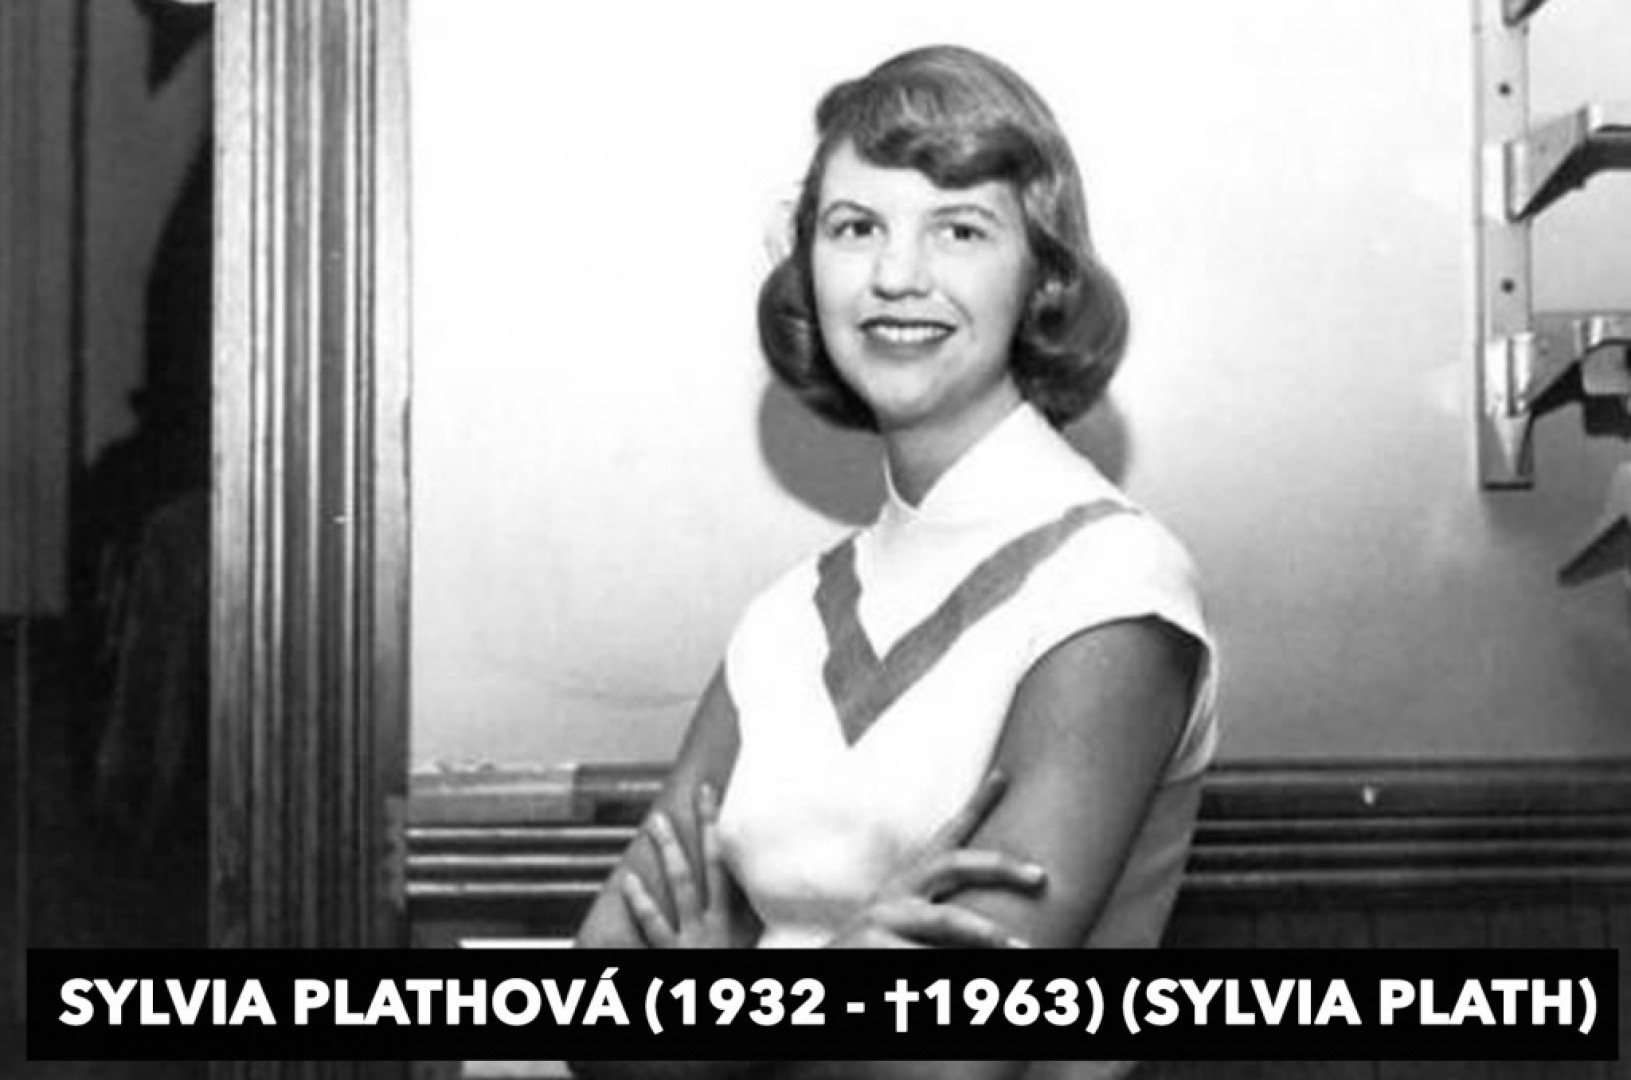 Sylvia Plathová (1932 - †1963) Americká spisovateľka